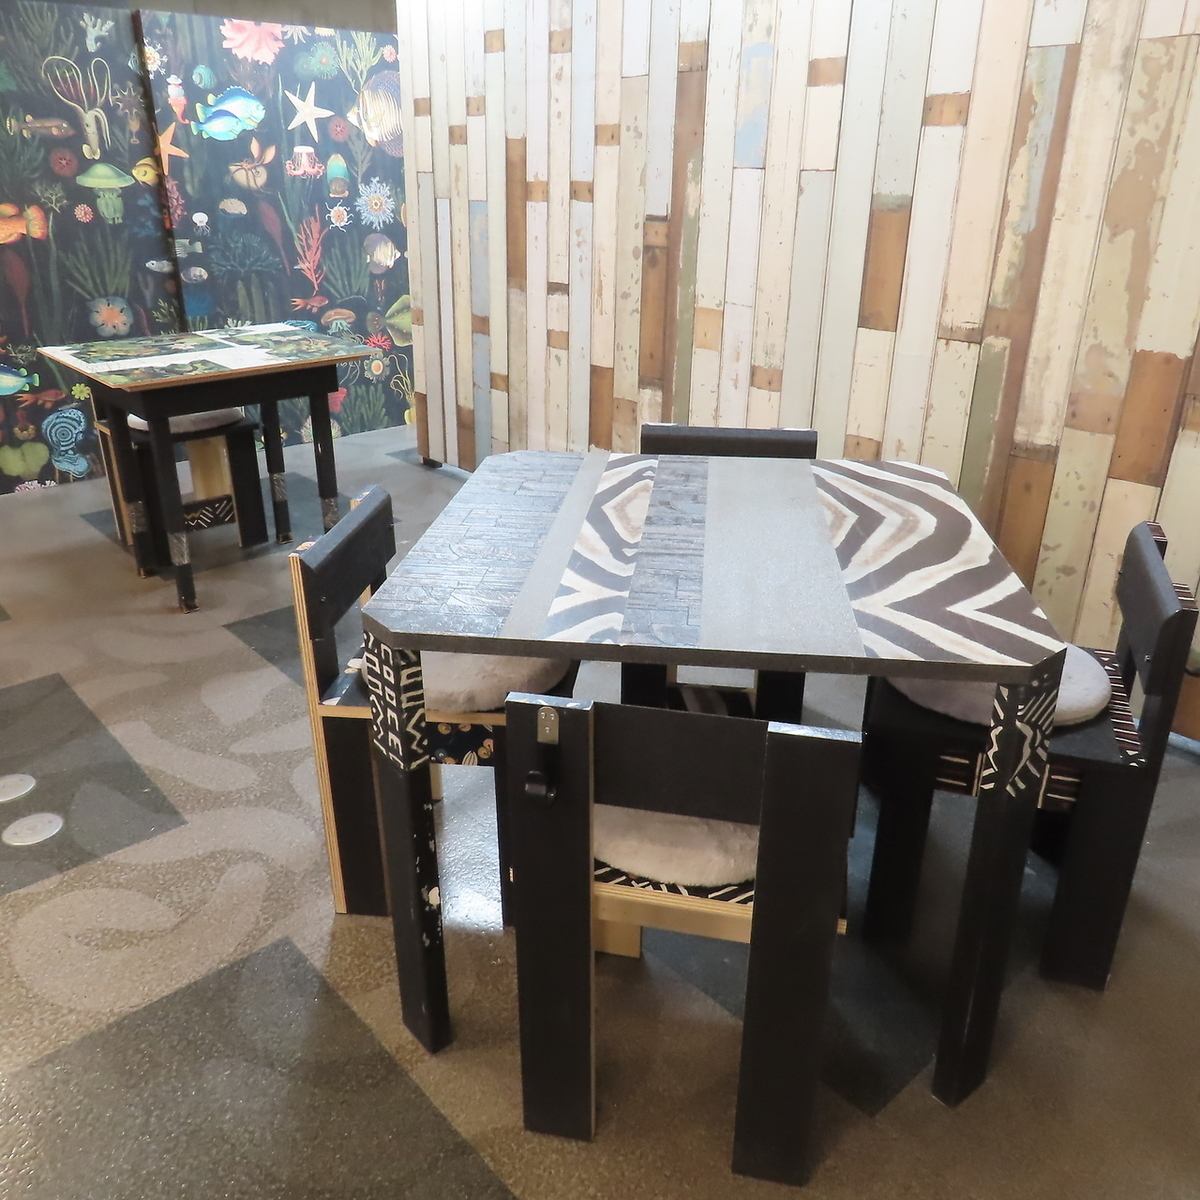 デザイナーがデザインした店内です。テーブル毎に違う模様も♪